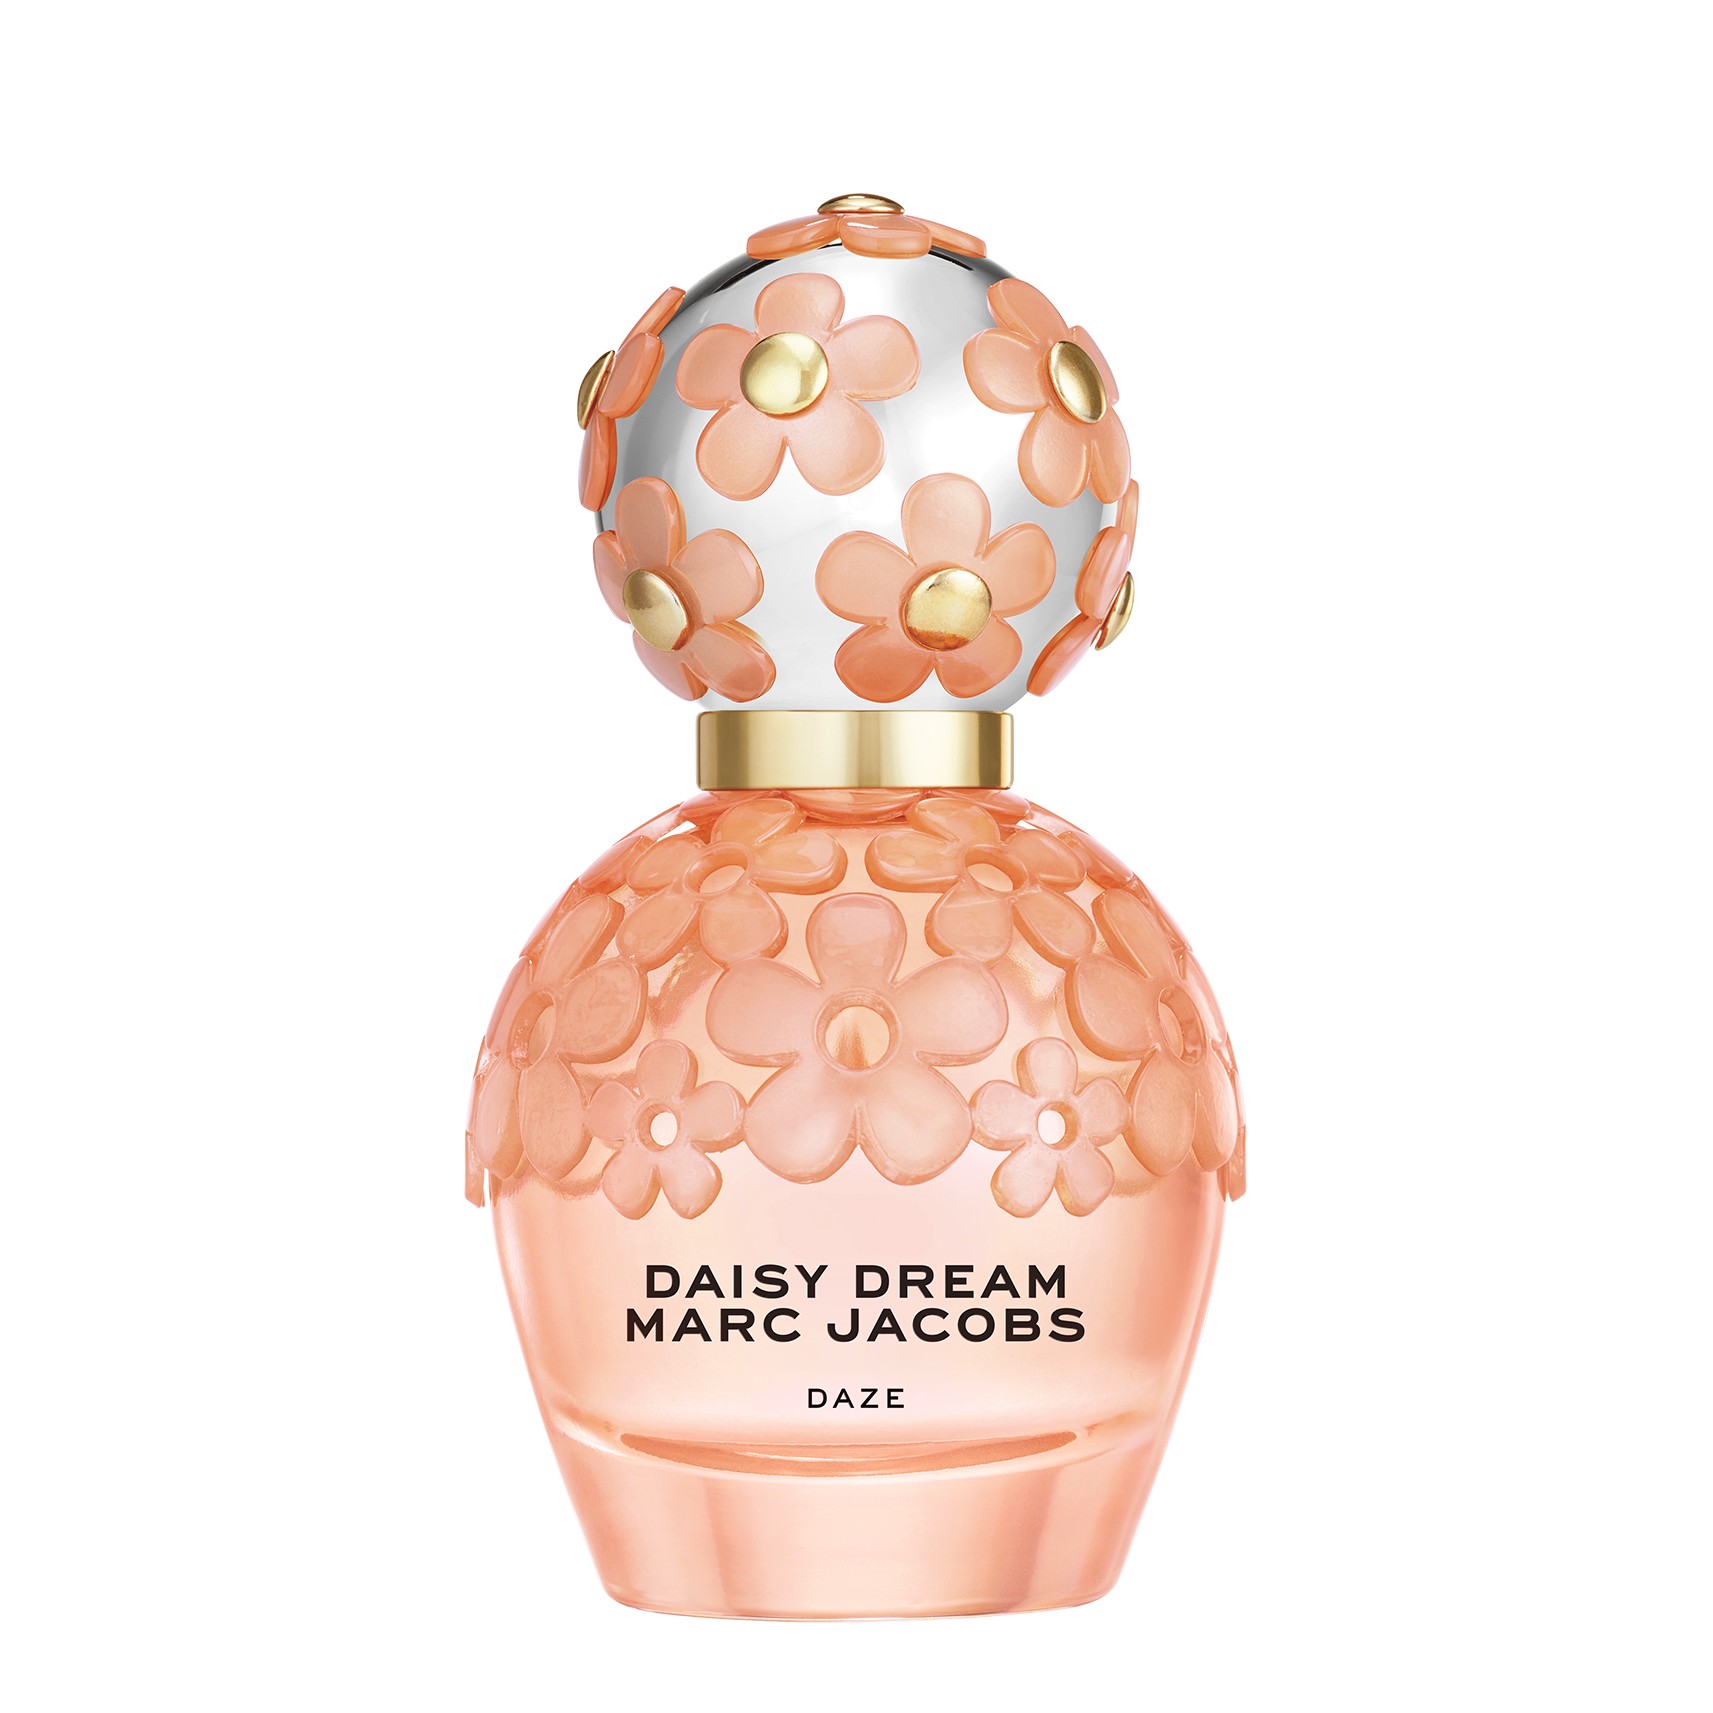 Marc Jacobs Daisy Dream Daze Eau de Toilette 50ml